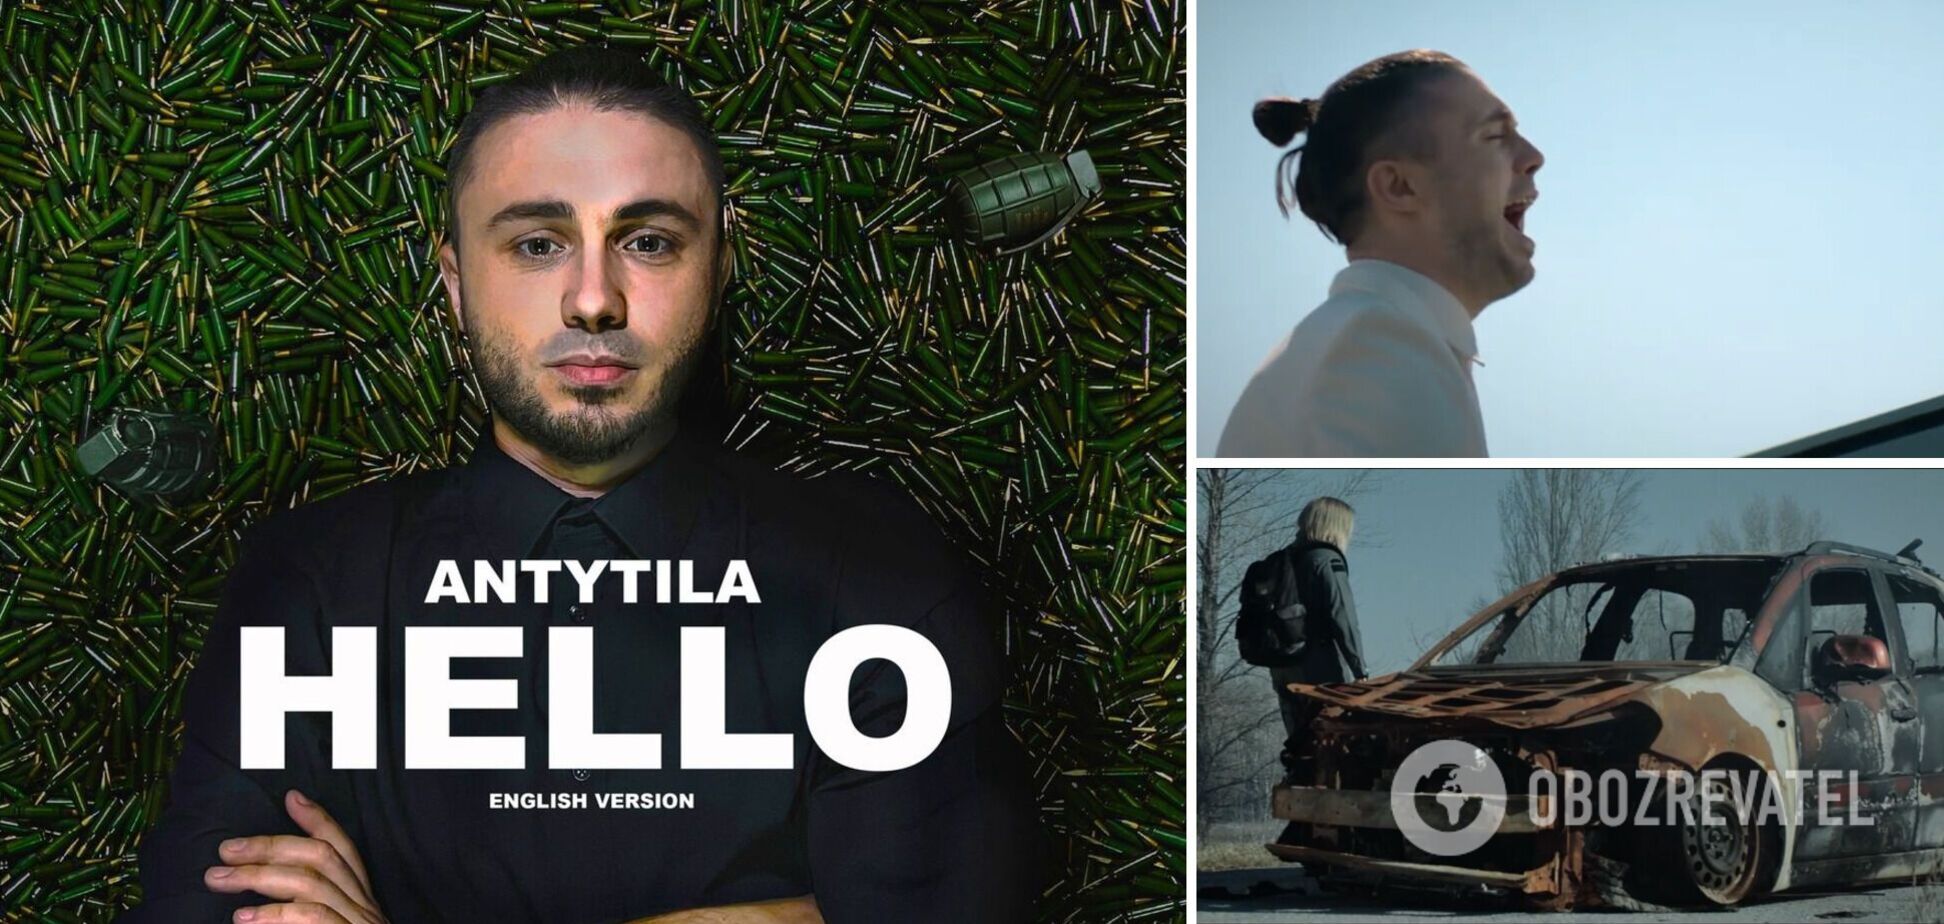 Тарас Тополя и 'Антитіла' выпустили англоязычную версию песни Hello. Видео